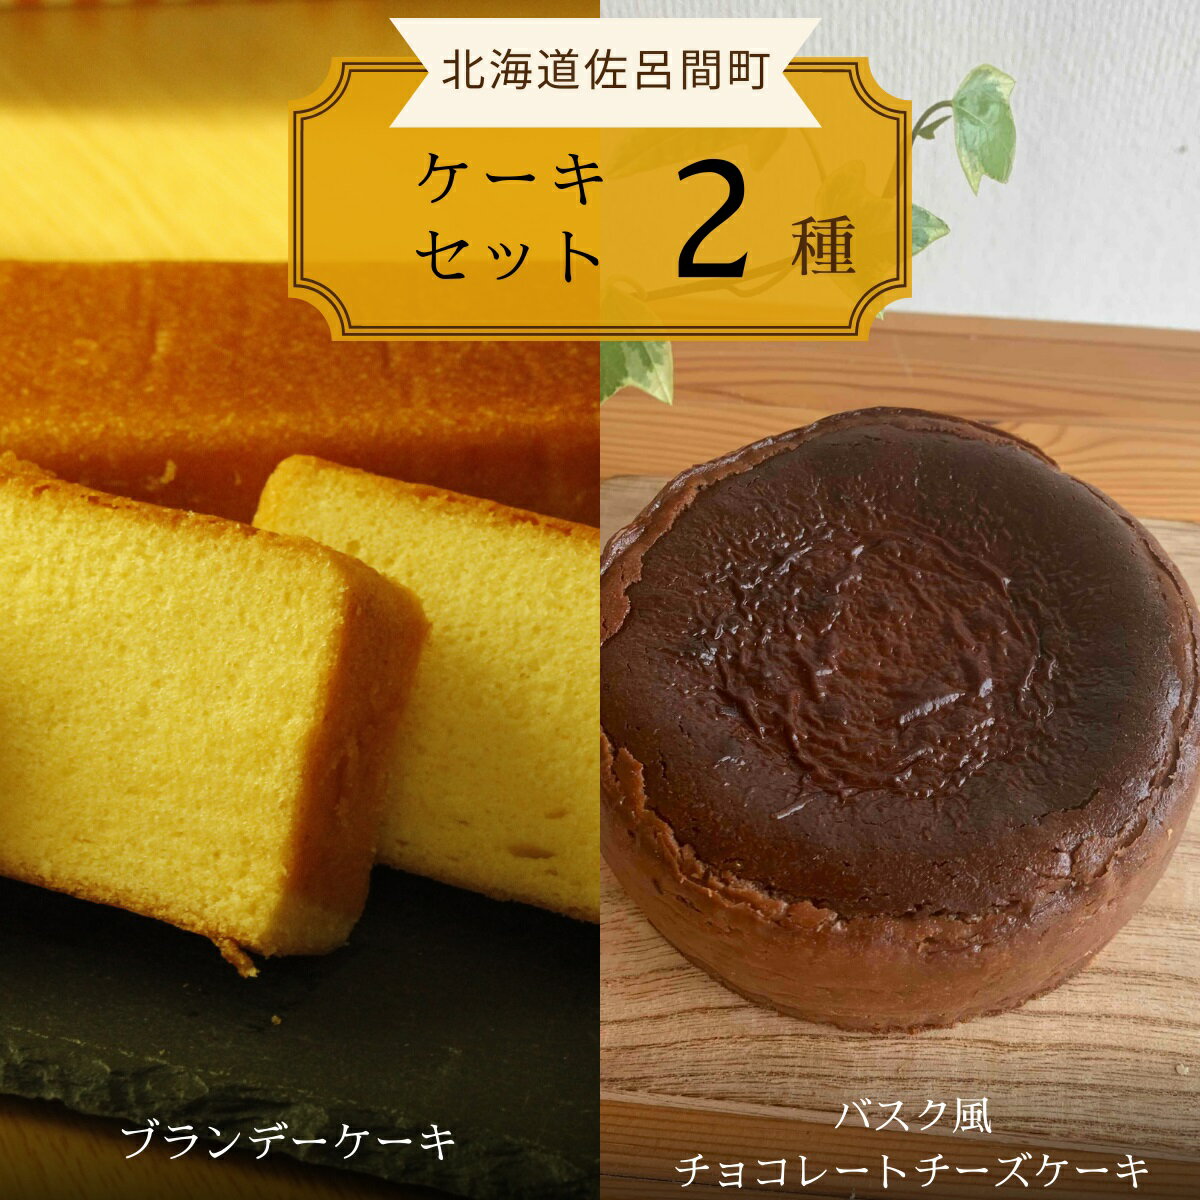  2種のケーキセット（ブランデーケーキ・バスク風チョコレートチーズケーキ）  SRMJ053